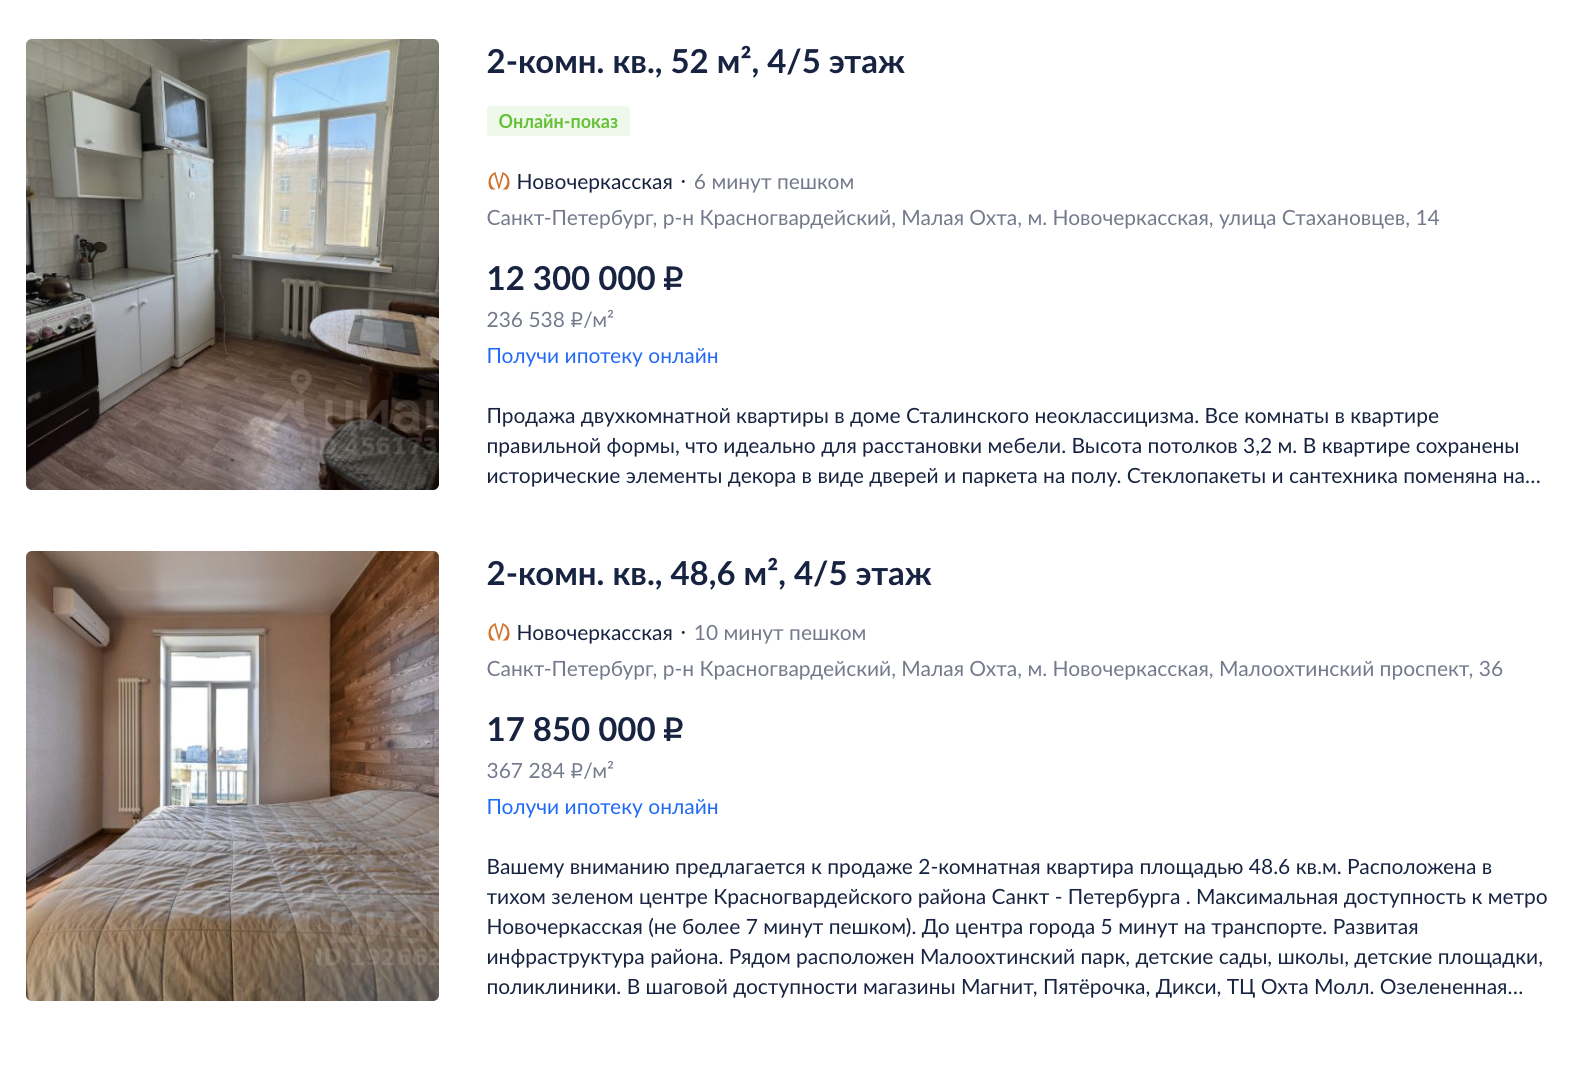 Цены на сталинки около метро. Источник: cian.ru